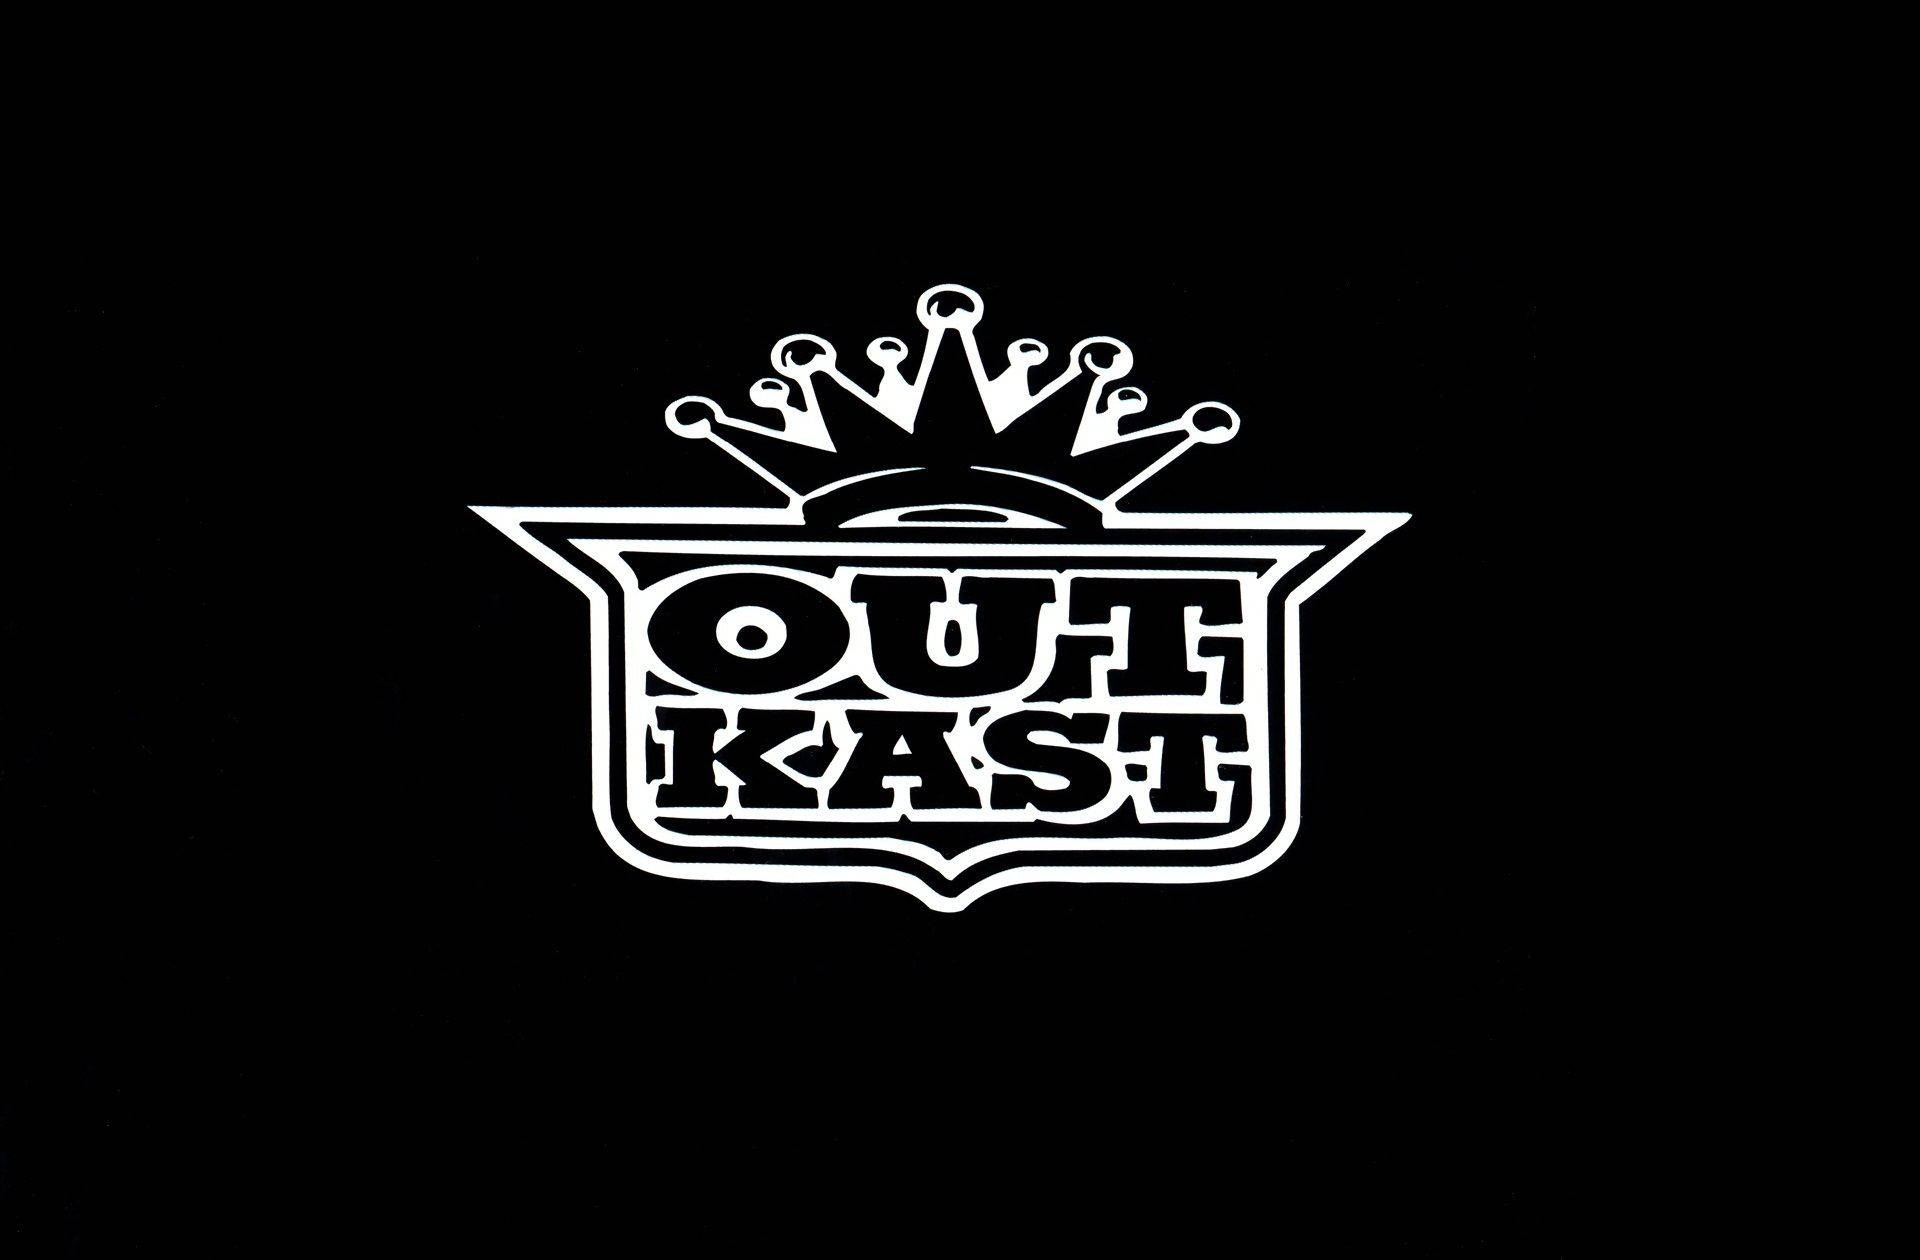 Outkast Logo Design Digital Art Background